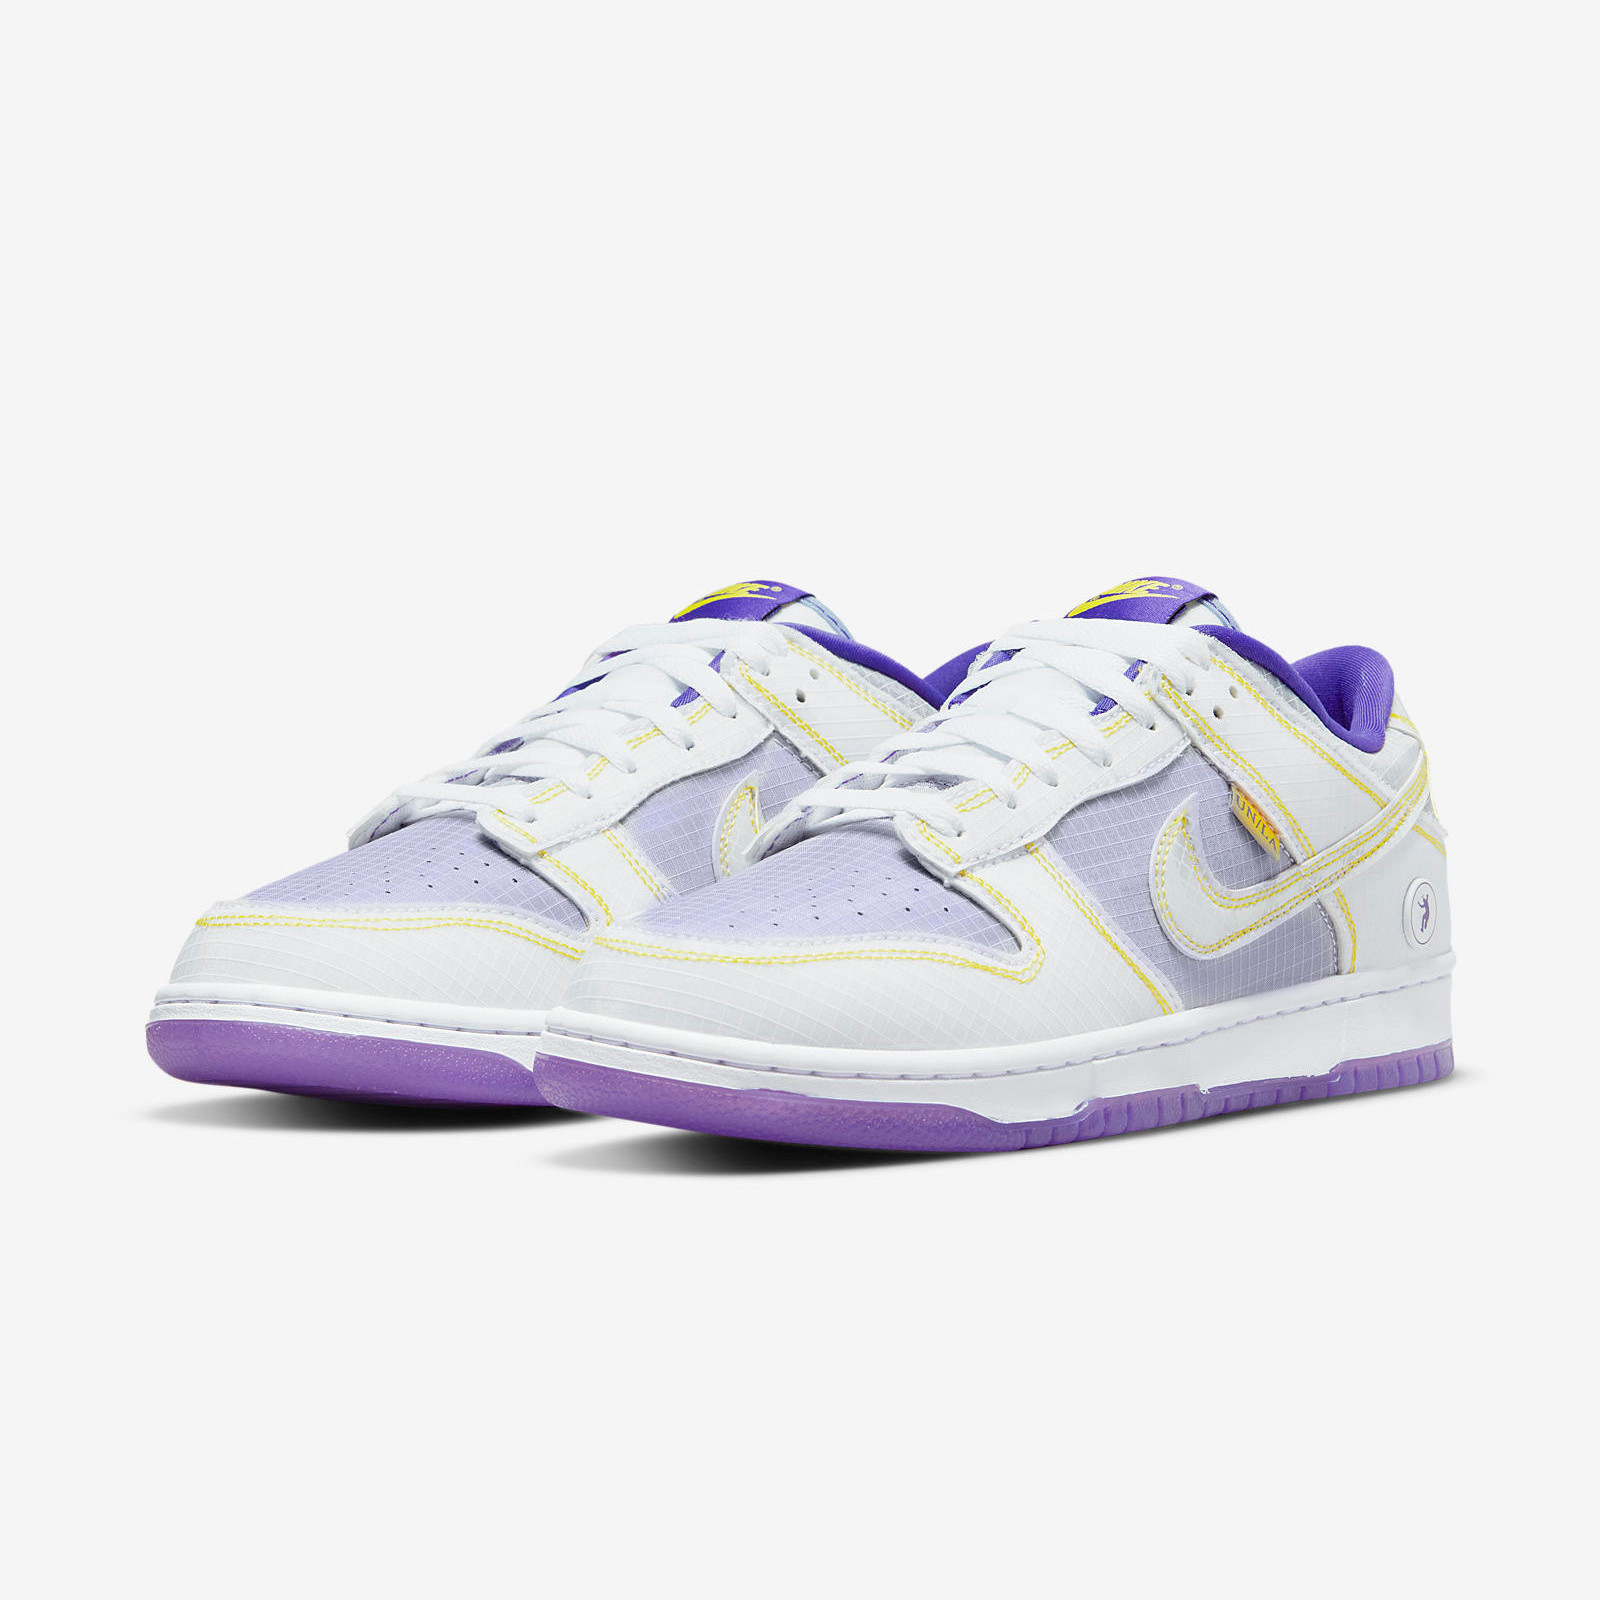 Union LA x Nike
Dunk Low
« Court Purple »